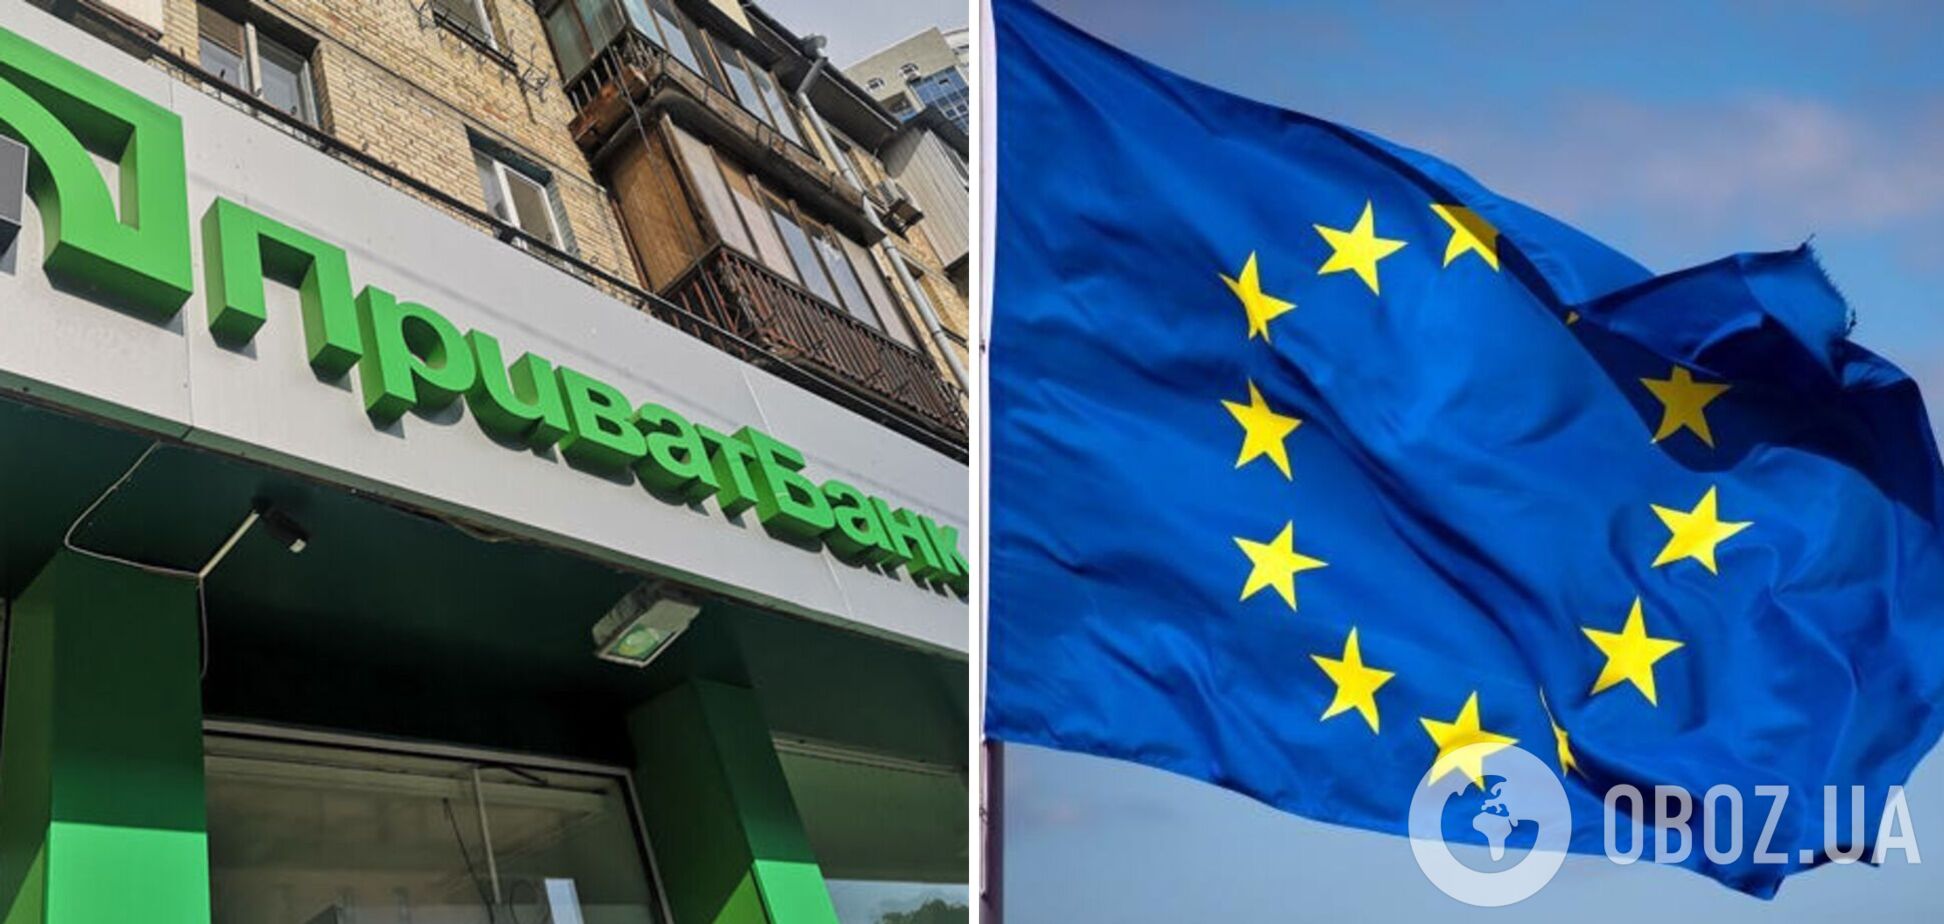 ПриватБанк перенес свой дата-центр в ЕС